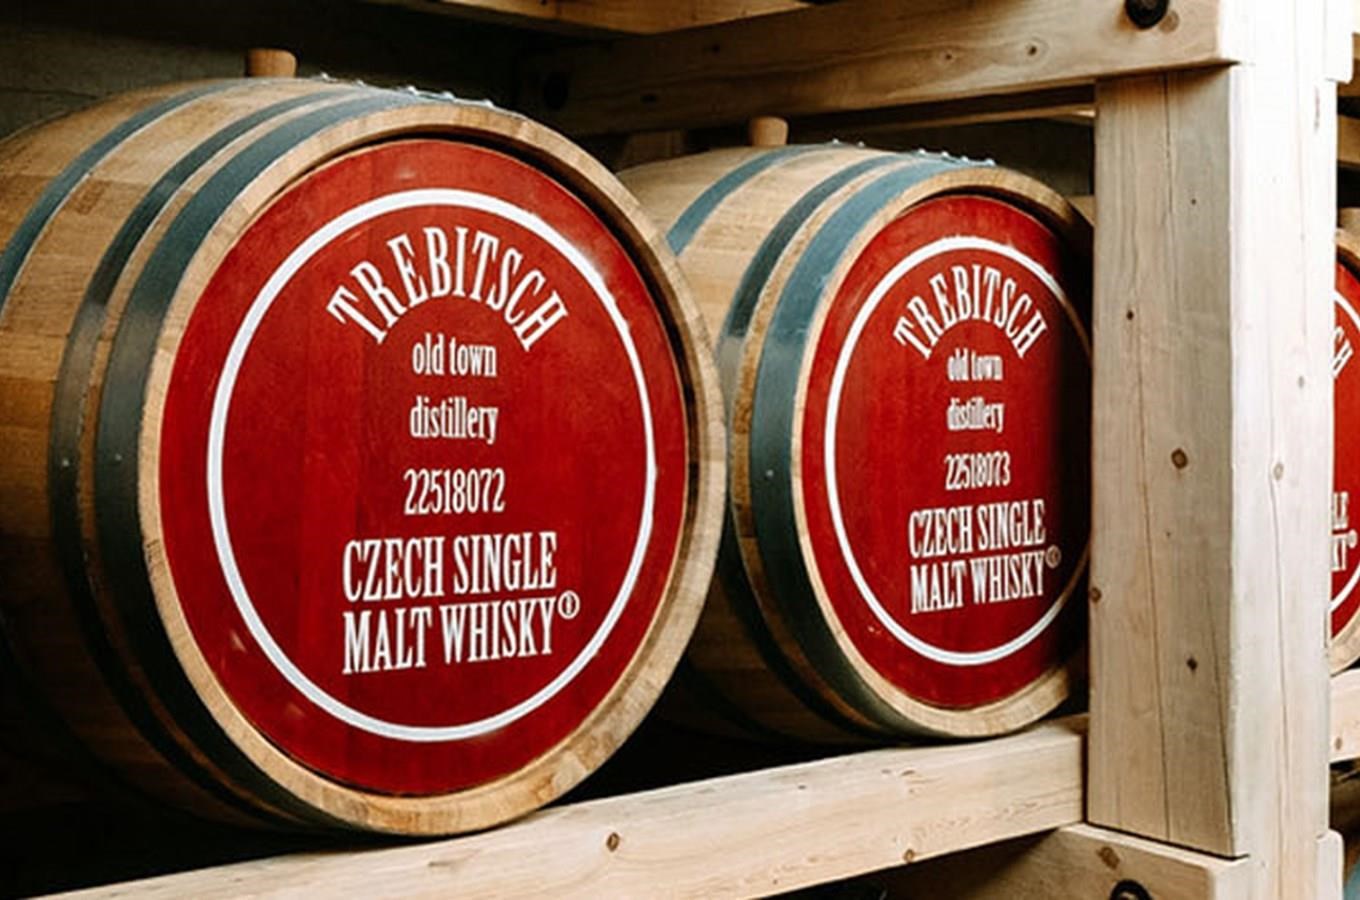 Česká whisky - Trebitsch Old Town Distillery